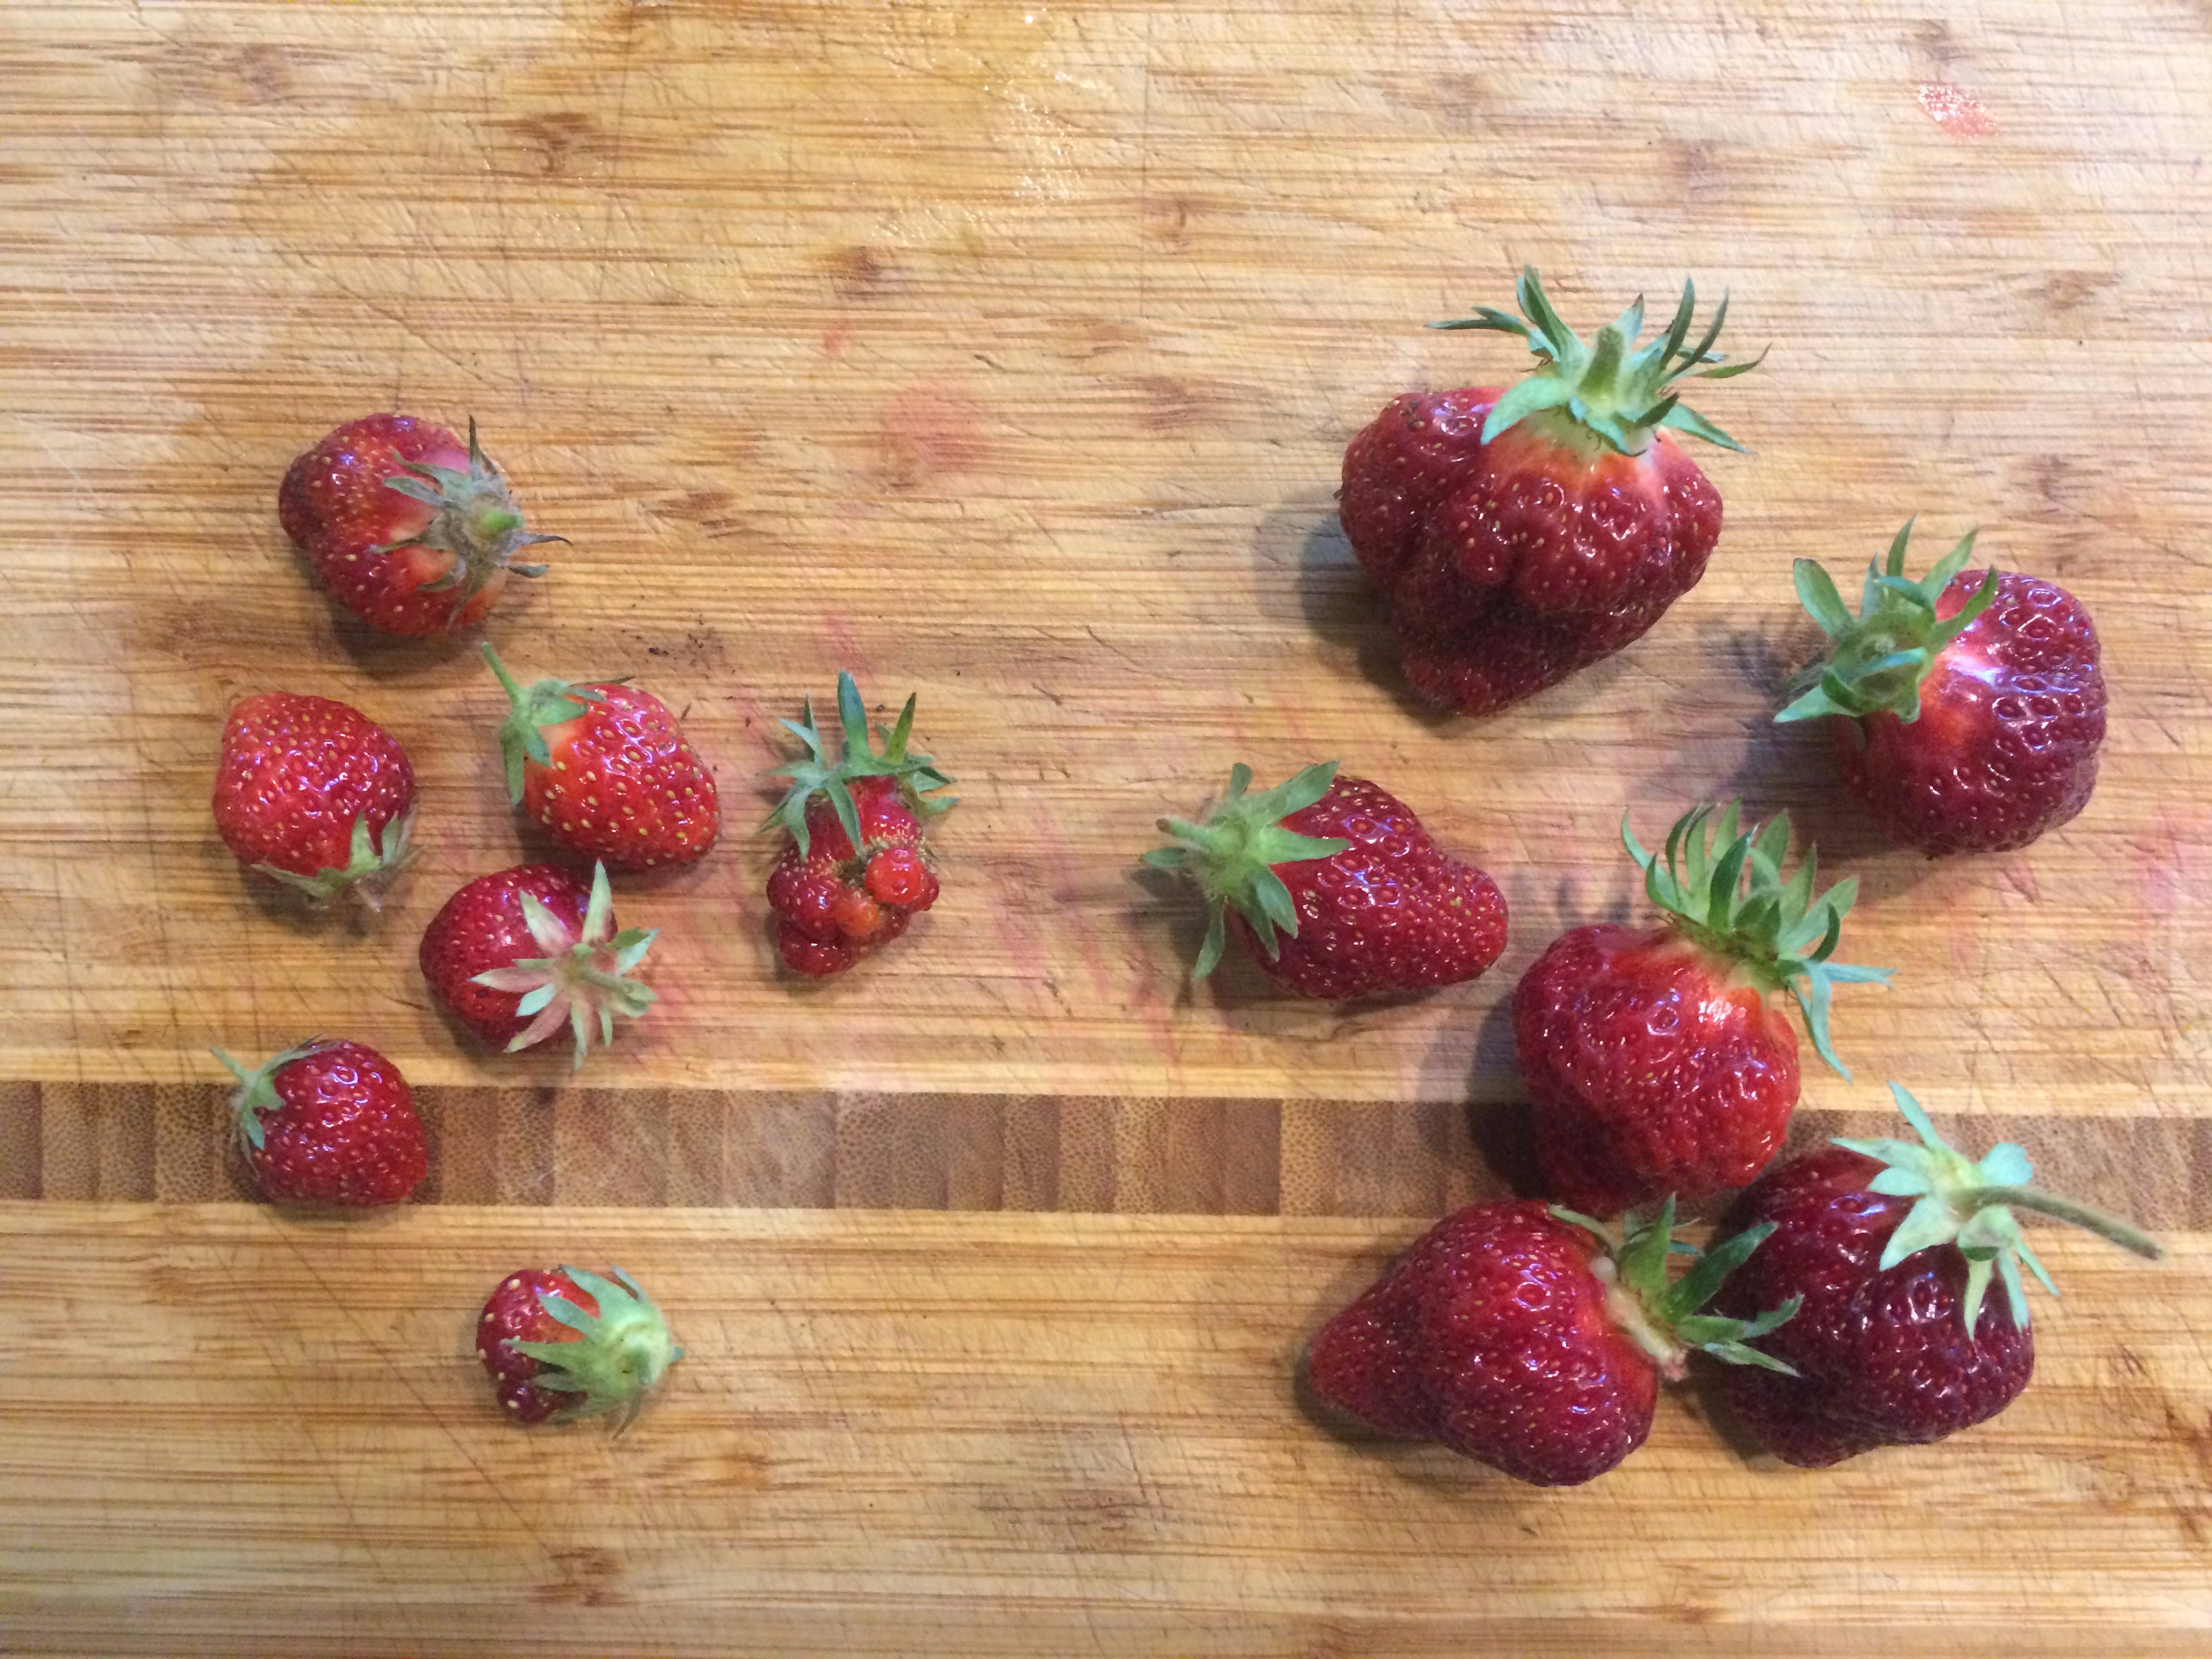 strawberry comparison